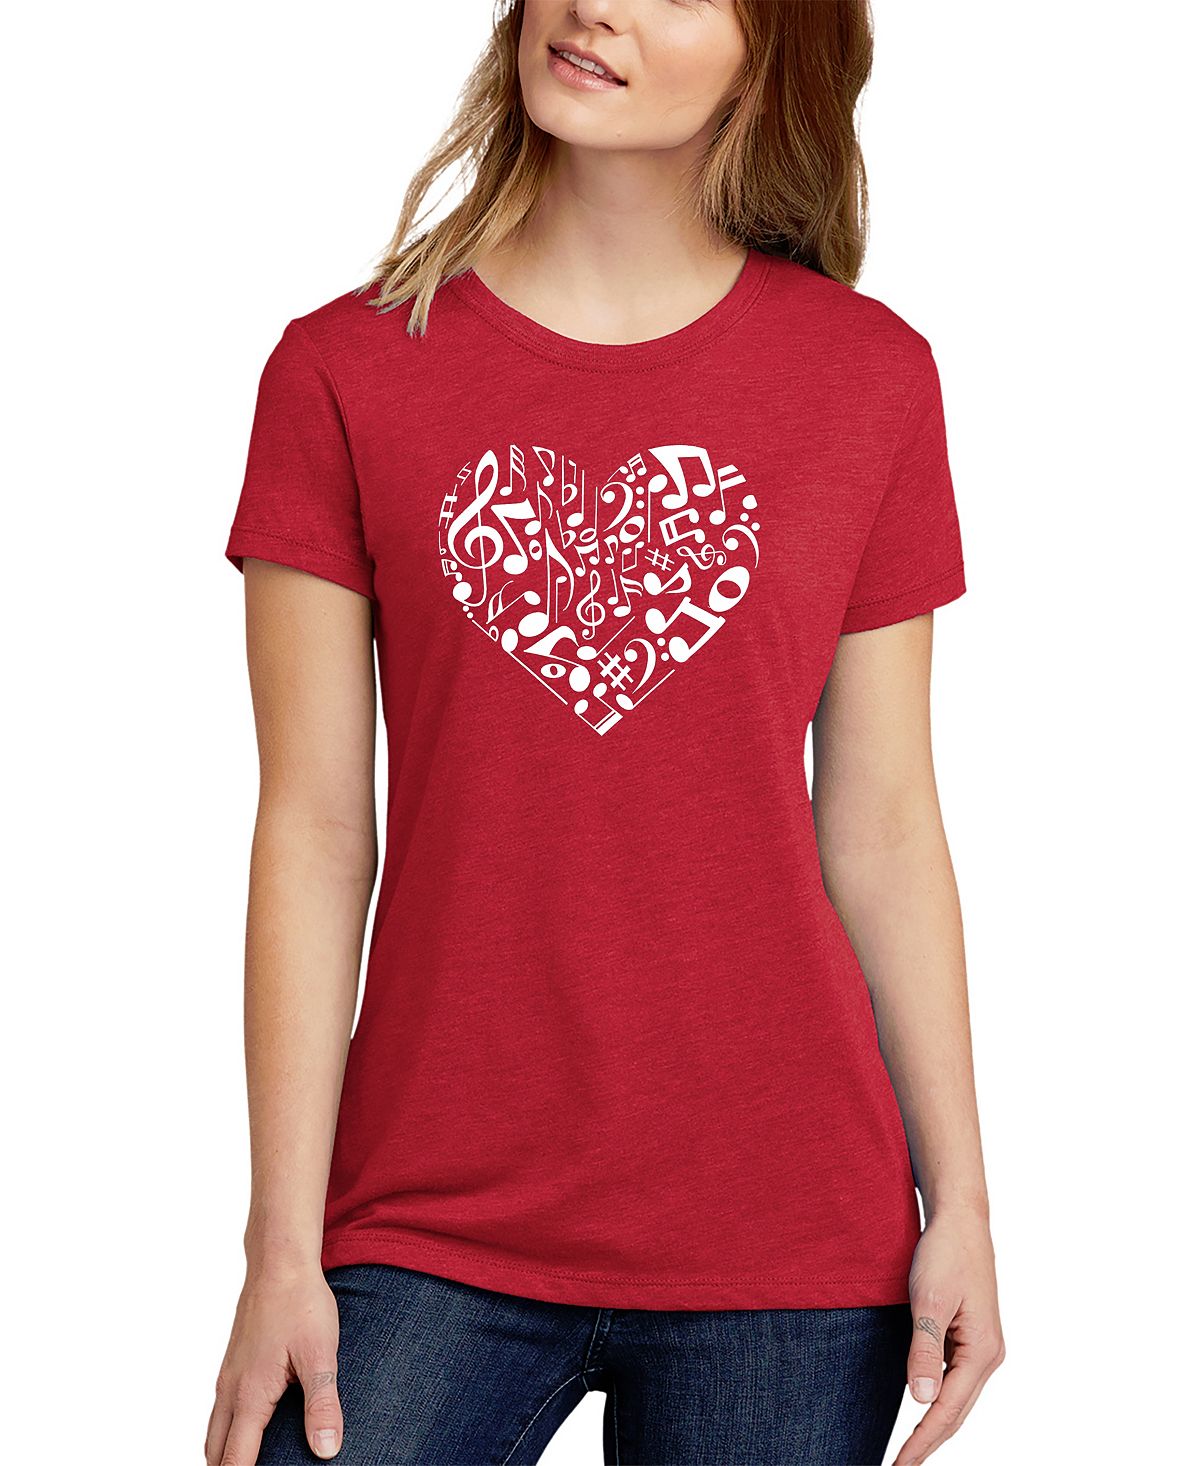 Женская футболка premium blend word art с нотами сердца LA Pop Art, красный